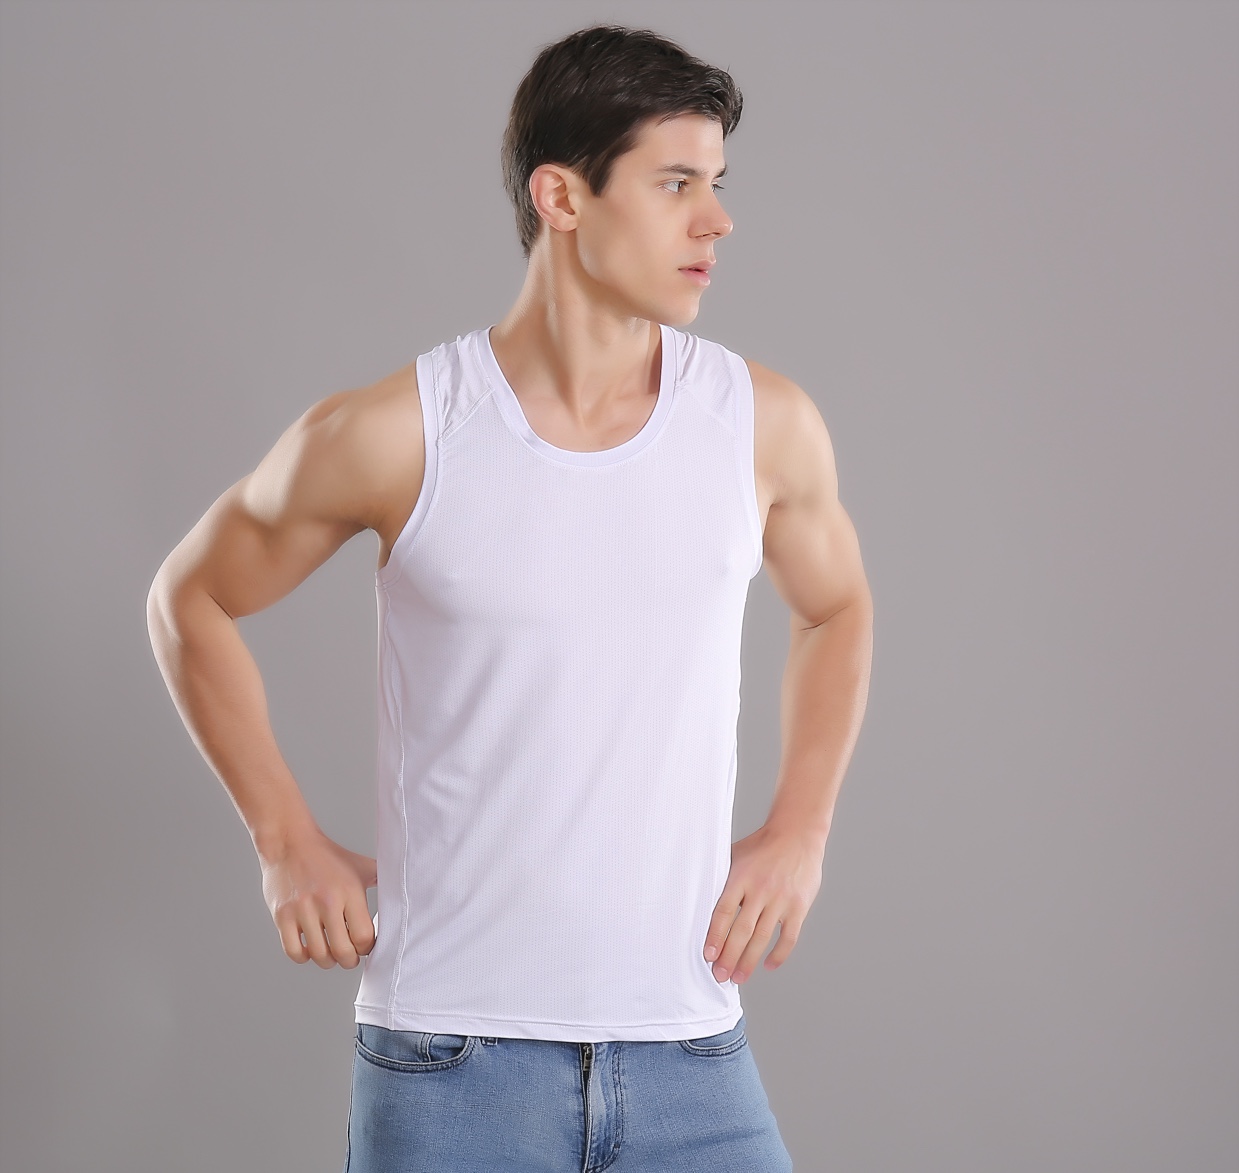 夏季新款男士速干运动背心短袖T恤跑步训练篮球贴身透气网孔健身上衣图